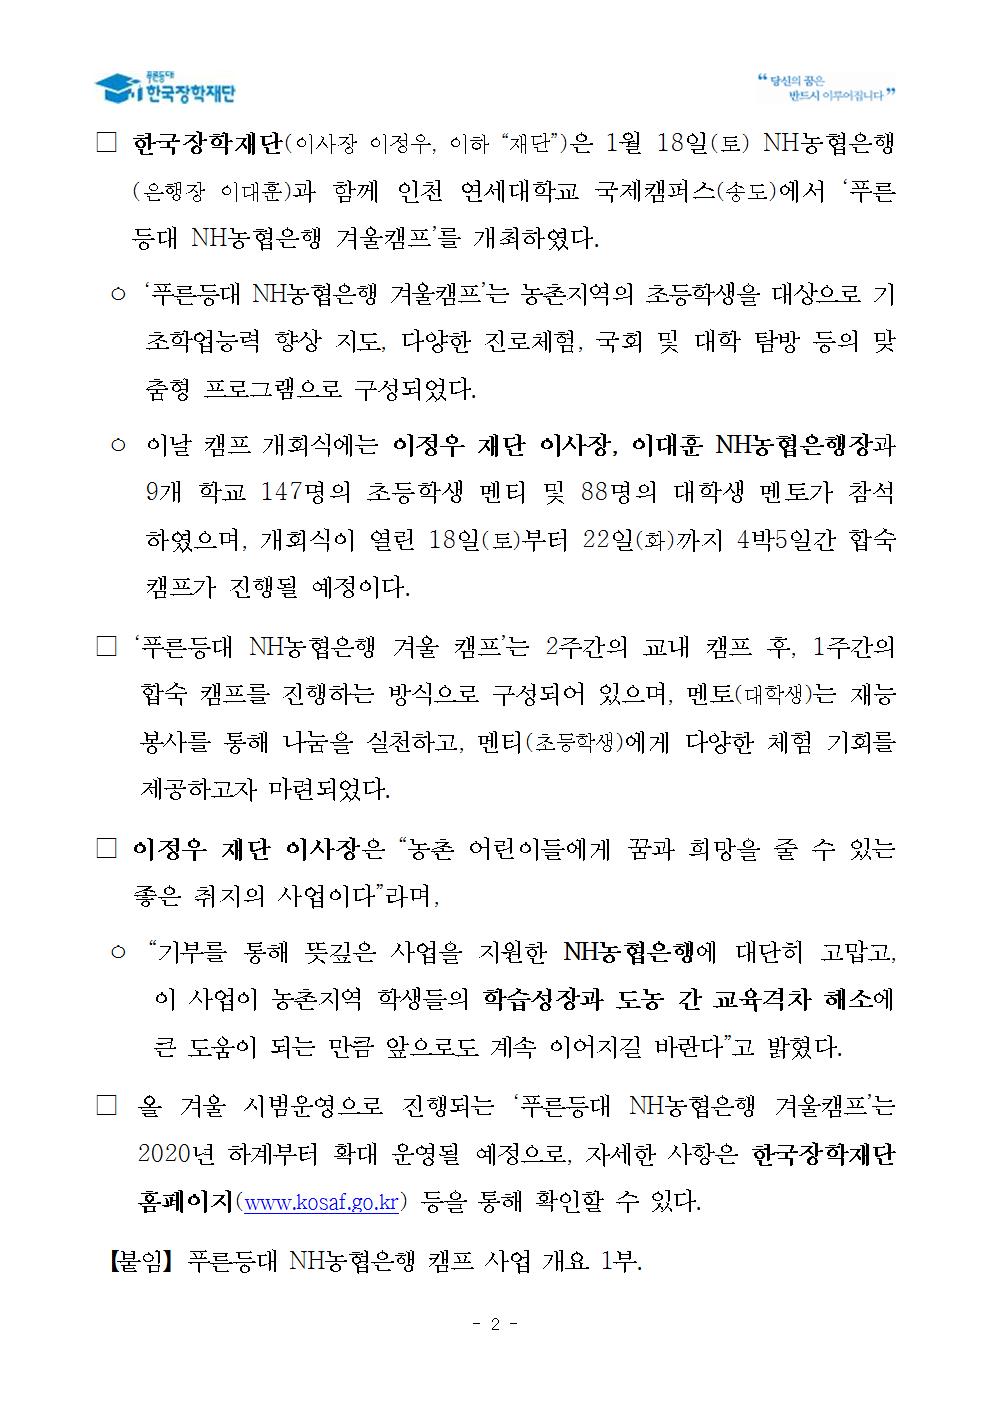 01-20(월)[보도자료] 한국장학재단, 푸른등대 NH농협은행 겨울캠프 개최002.jpg